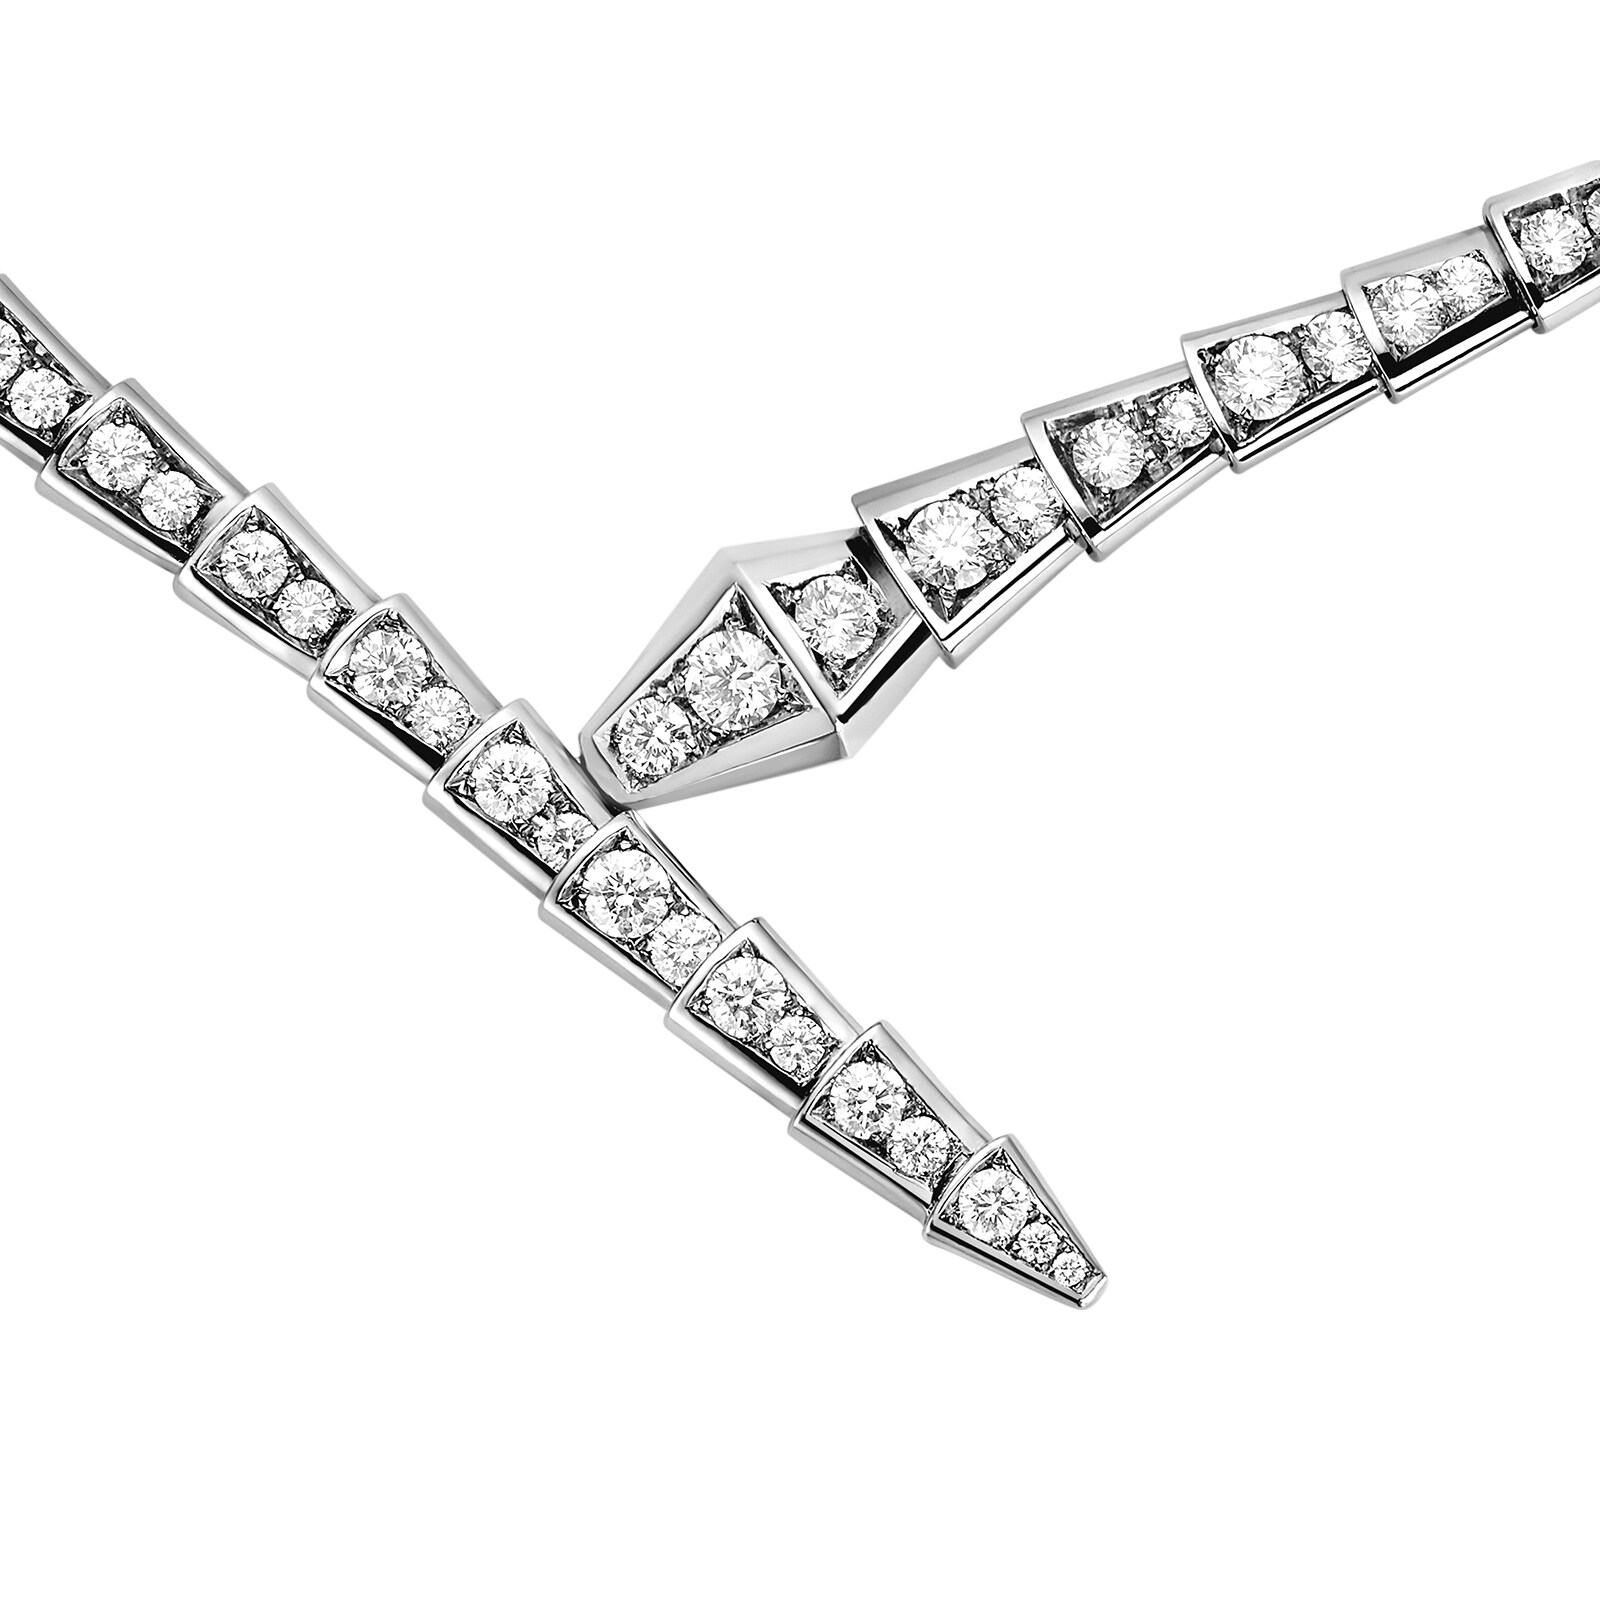 Bvlgari Serpenti Viper Necklace | Bvlgari jewelry, Luxe jewelry, Jewelry